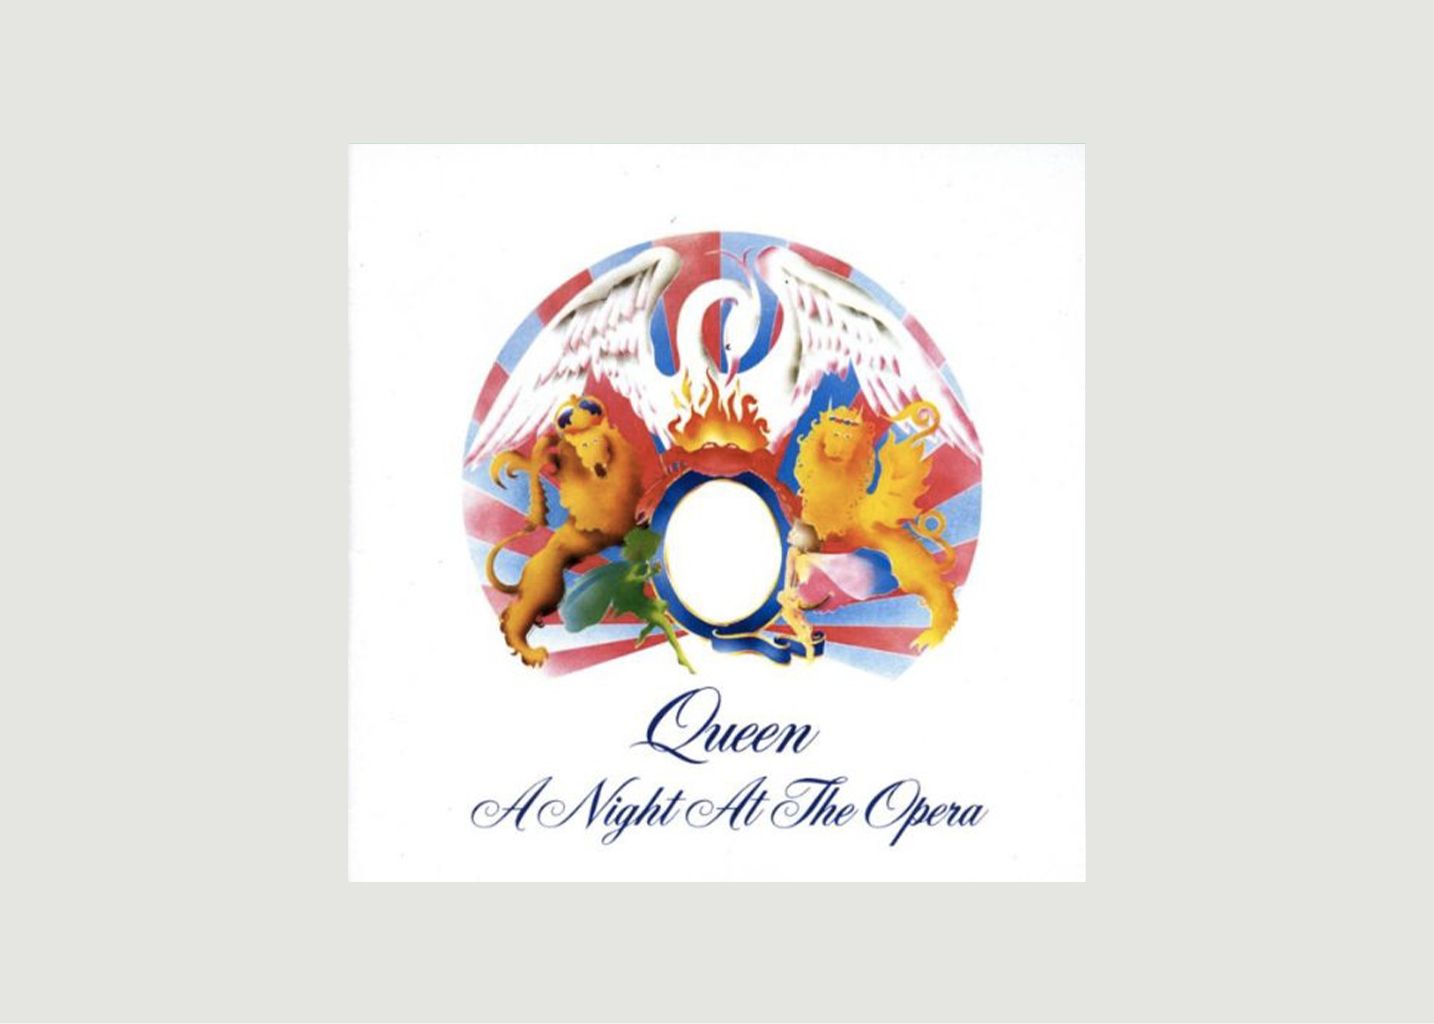 Vinyle A Night At The Opera - Queen - La vinyl-thèque idéale